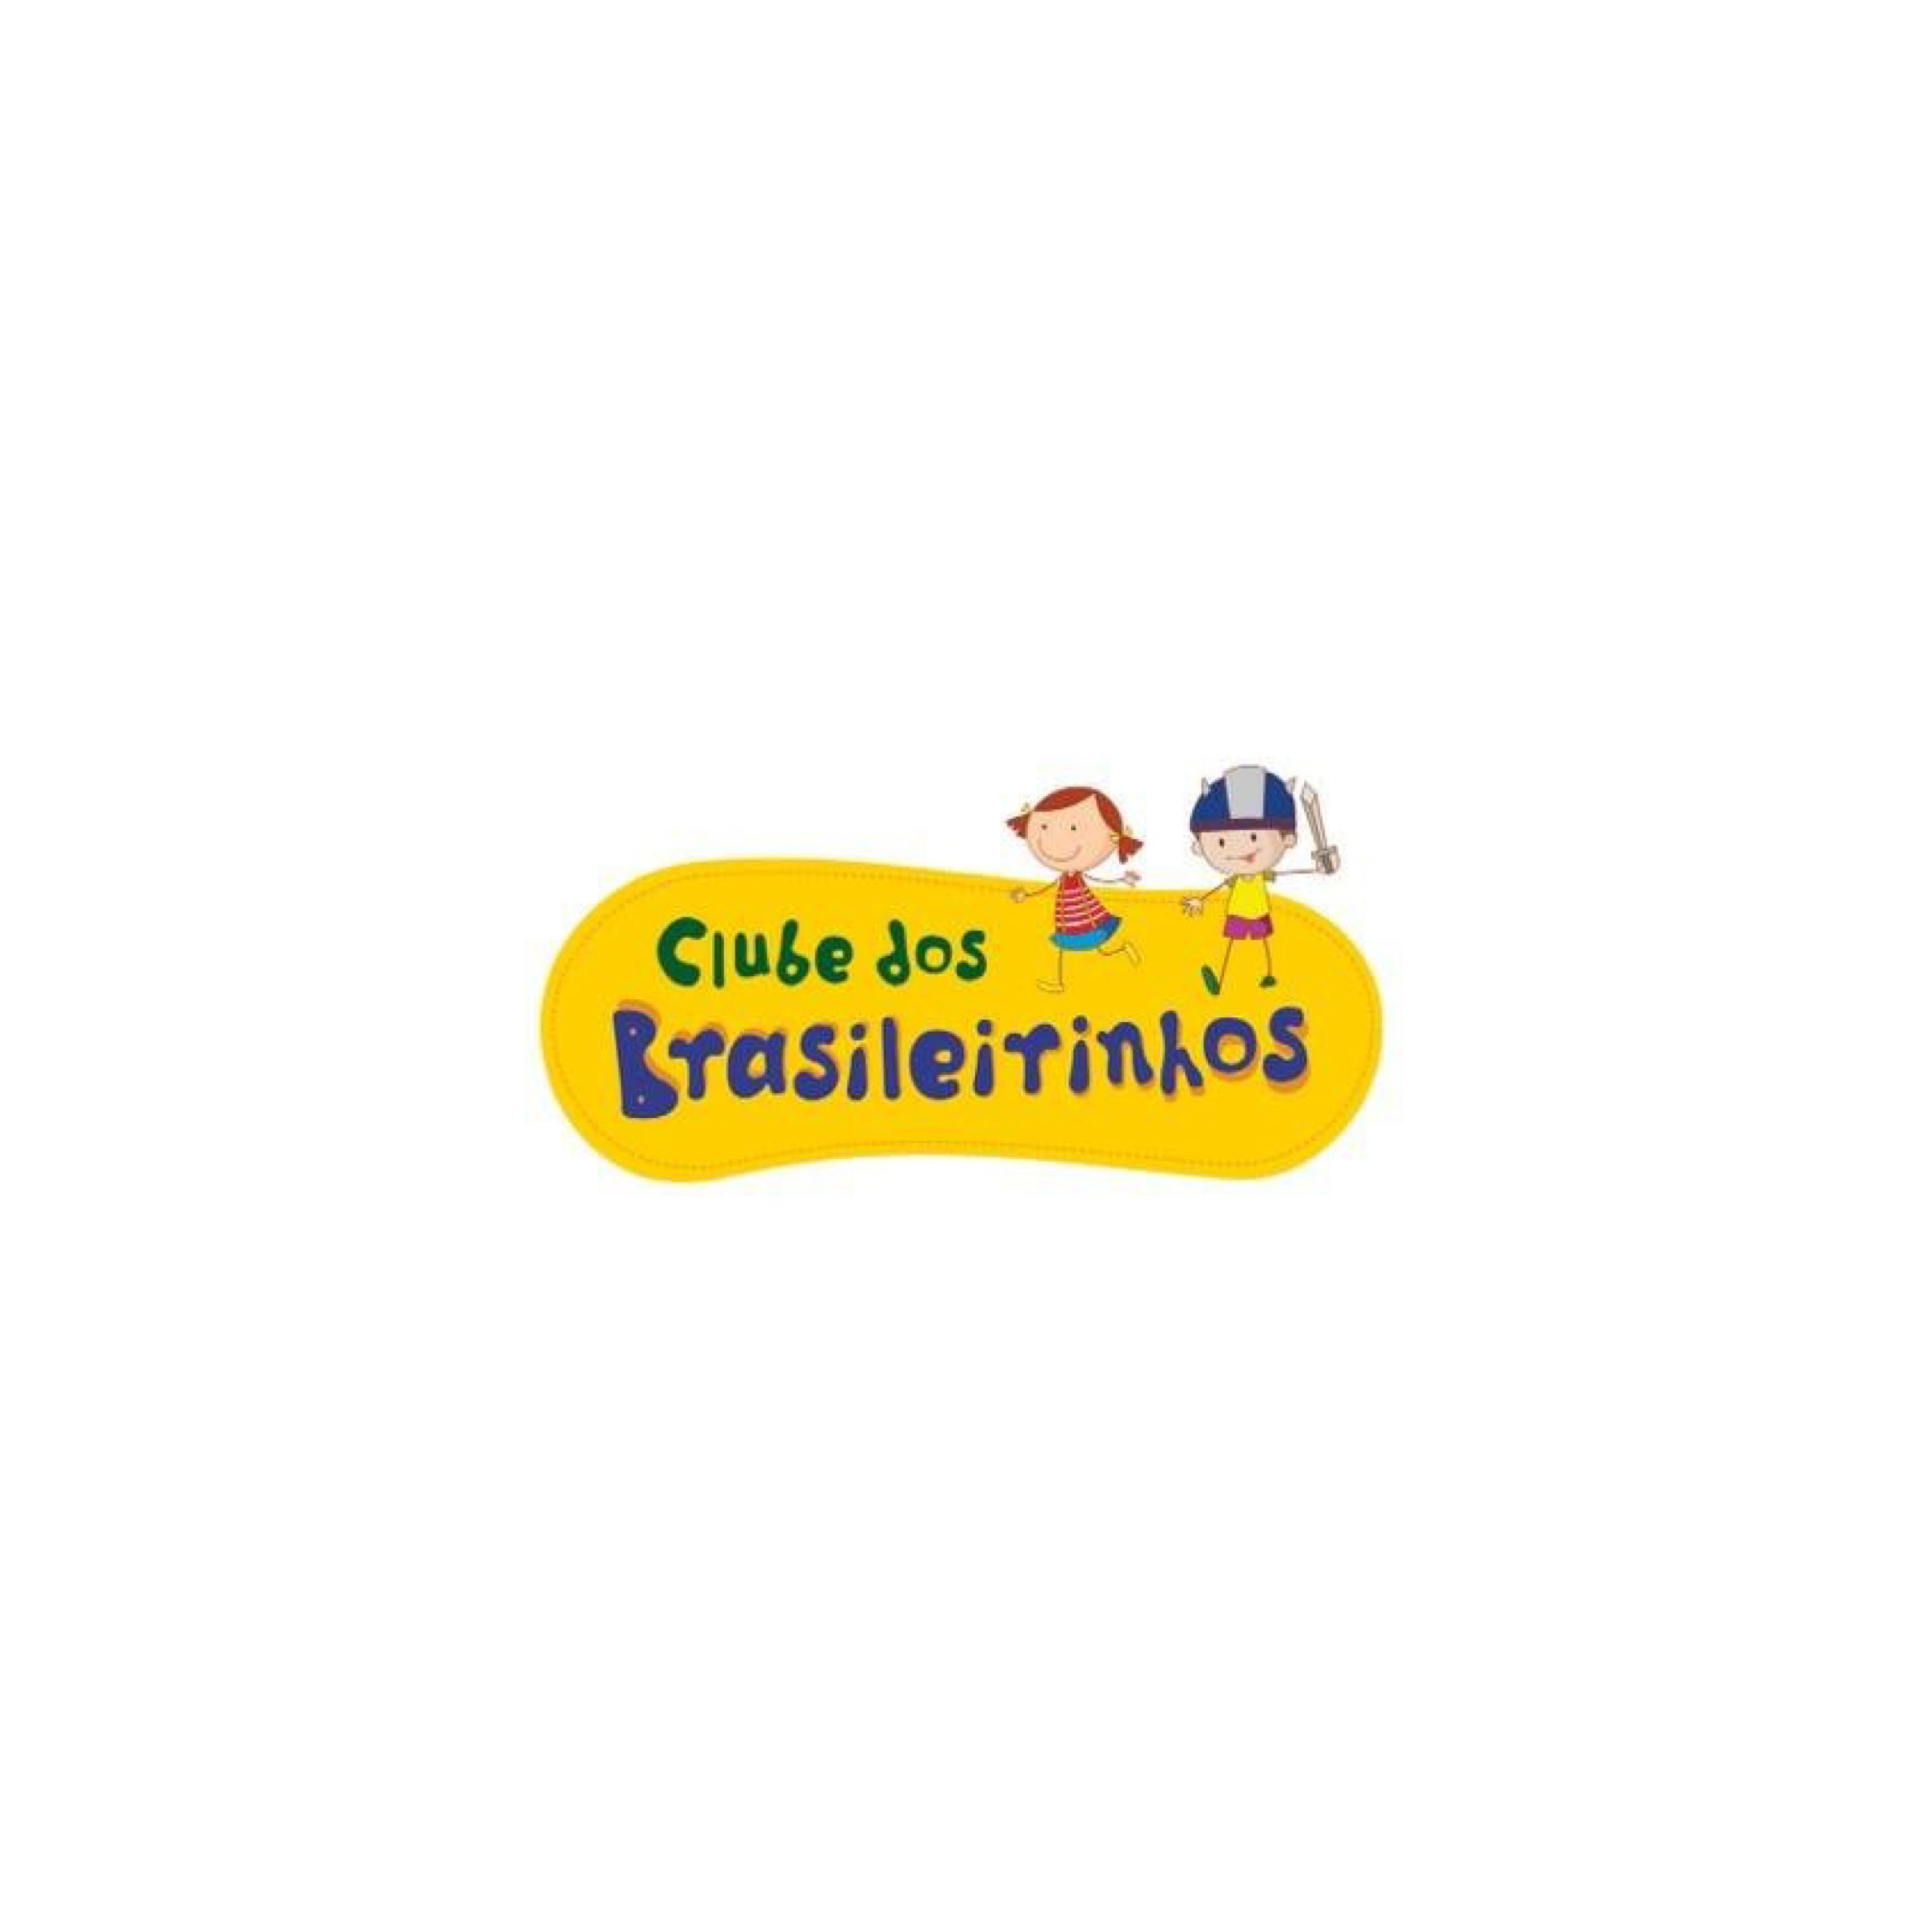 Clube Dos Brasileirinhos logo